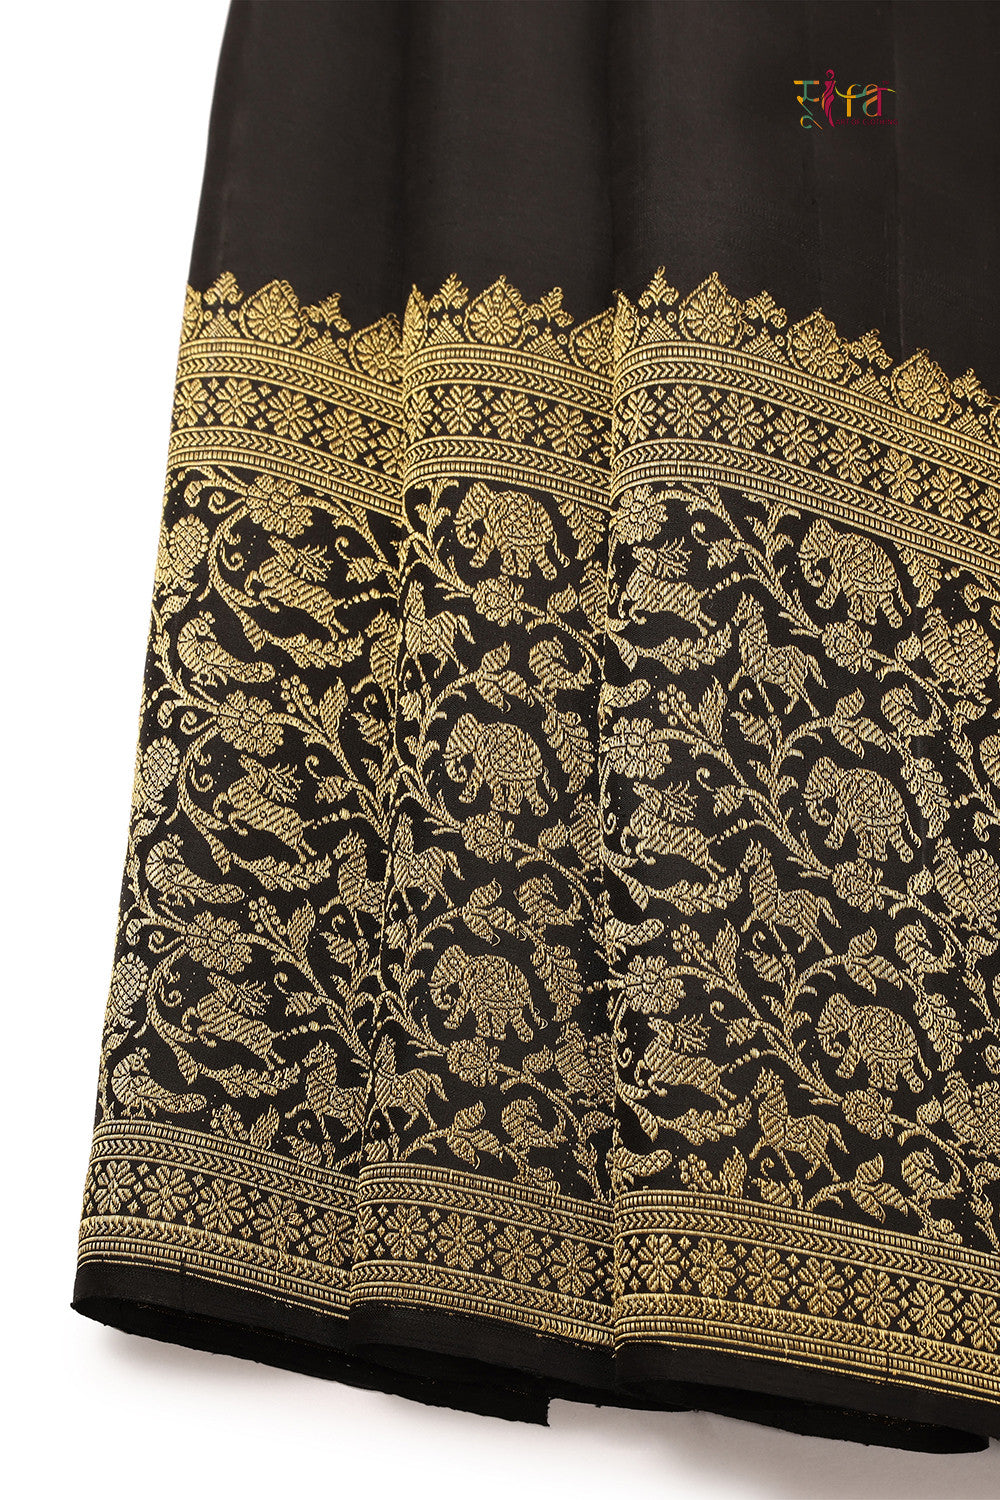 Black Handloom Kanchipattu With Pure Thick Zari Motifs